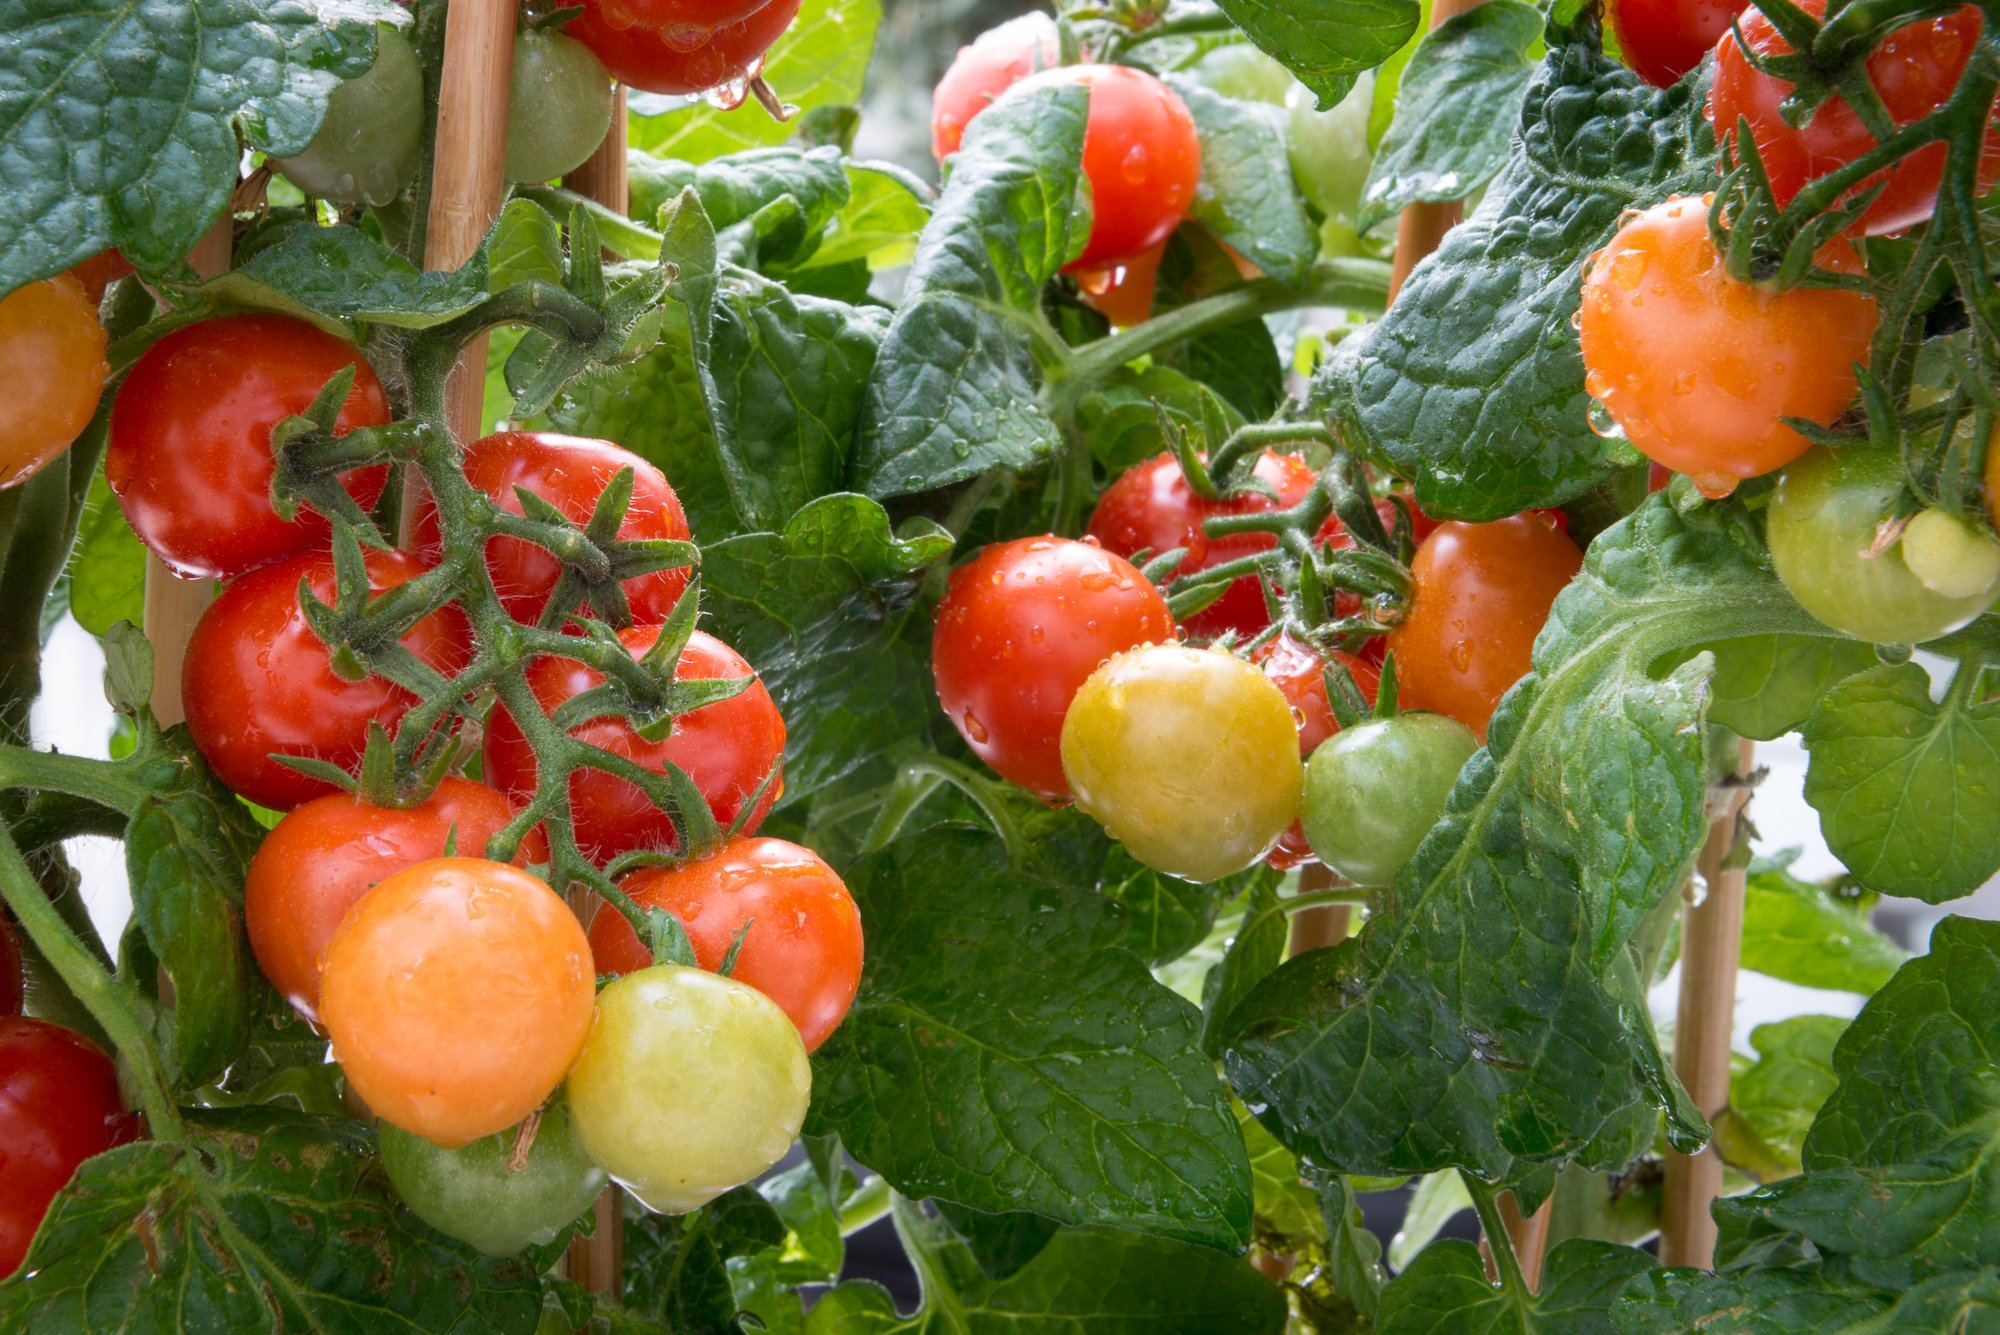 Åsbyhemochträdgård-tomater.jpg